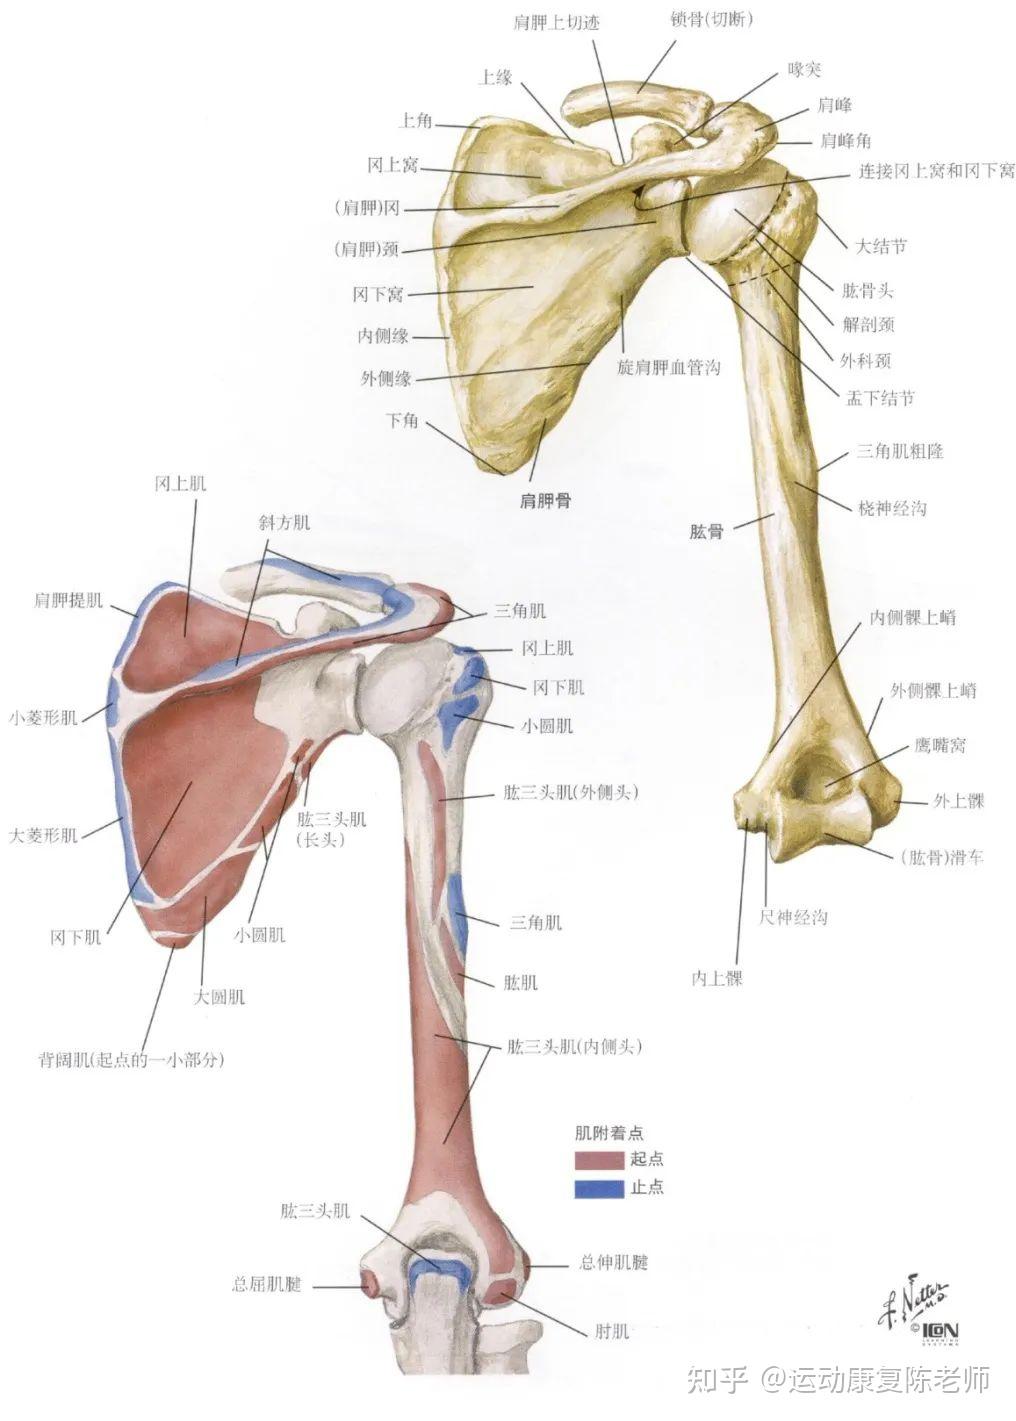 肩关节是人体最灵活的一个关节,能在三个平面内进行运动,肩关节周围的